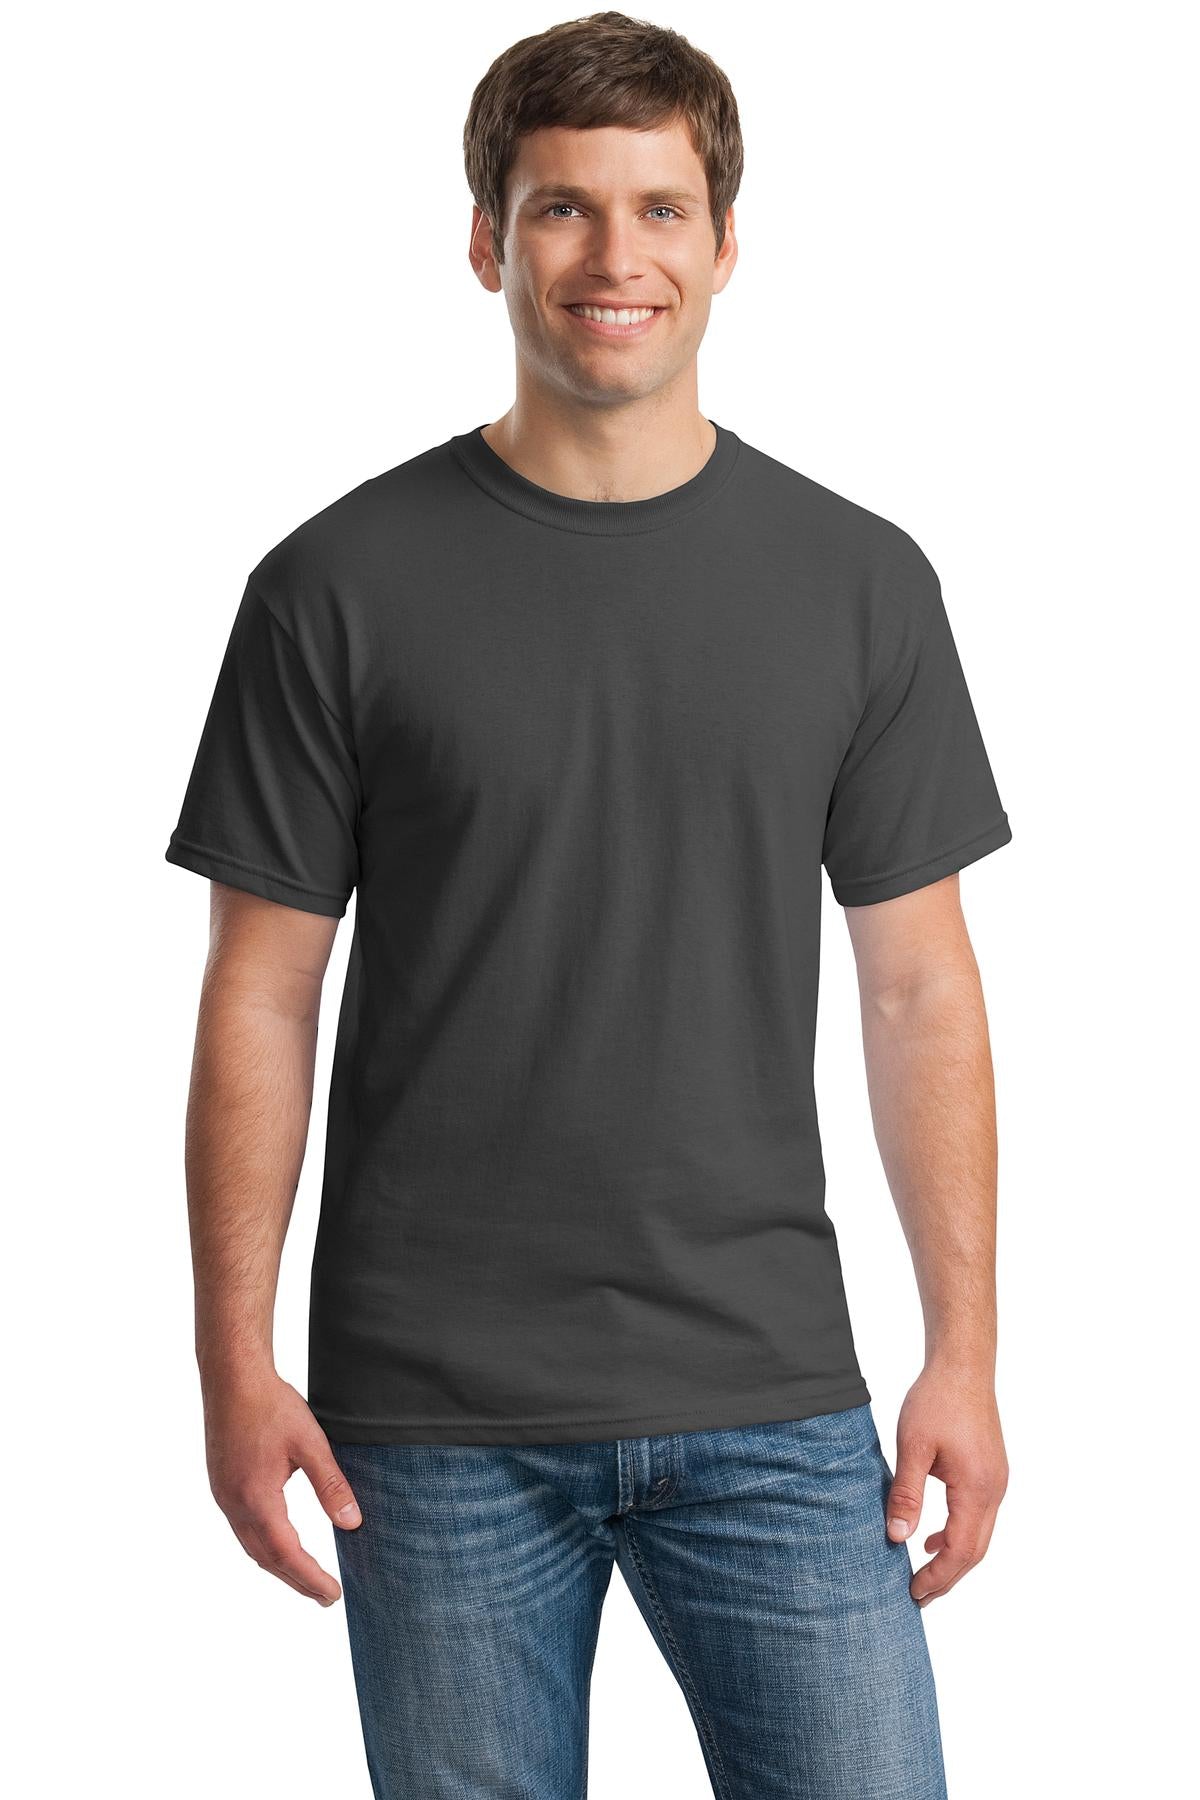 Gildan® - Heavy Cotton™ 100% Cotton T-Shirt. 5000 [Charcoal] - DFW Impression